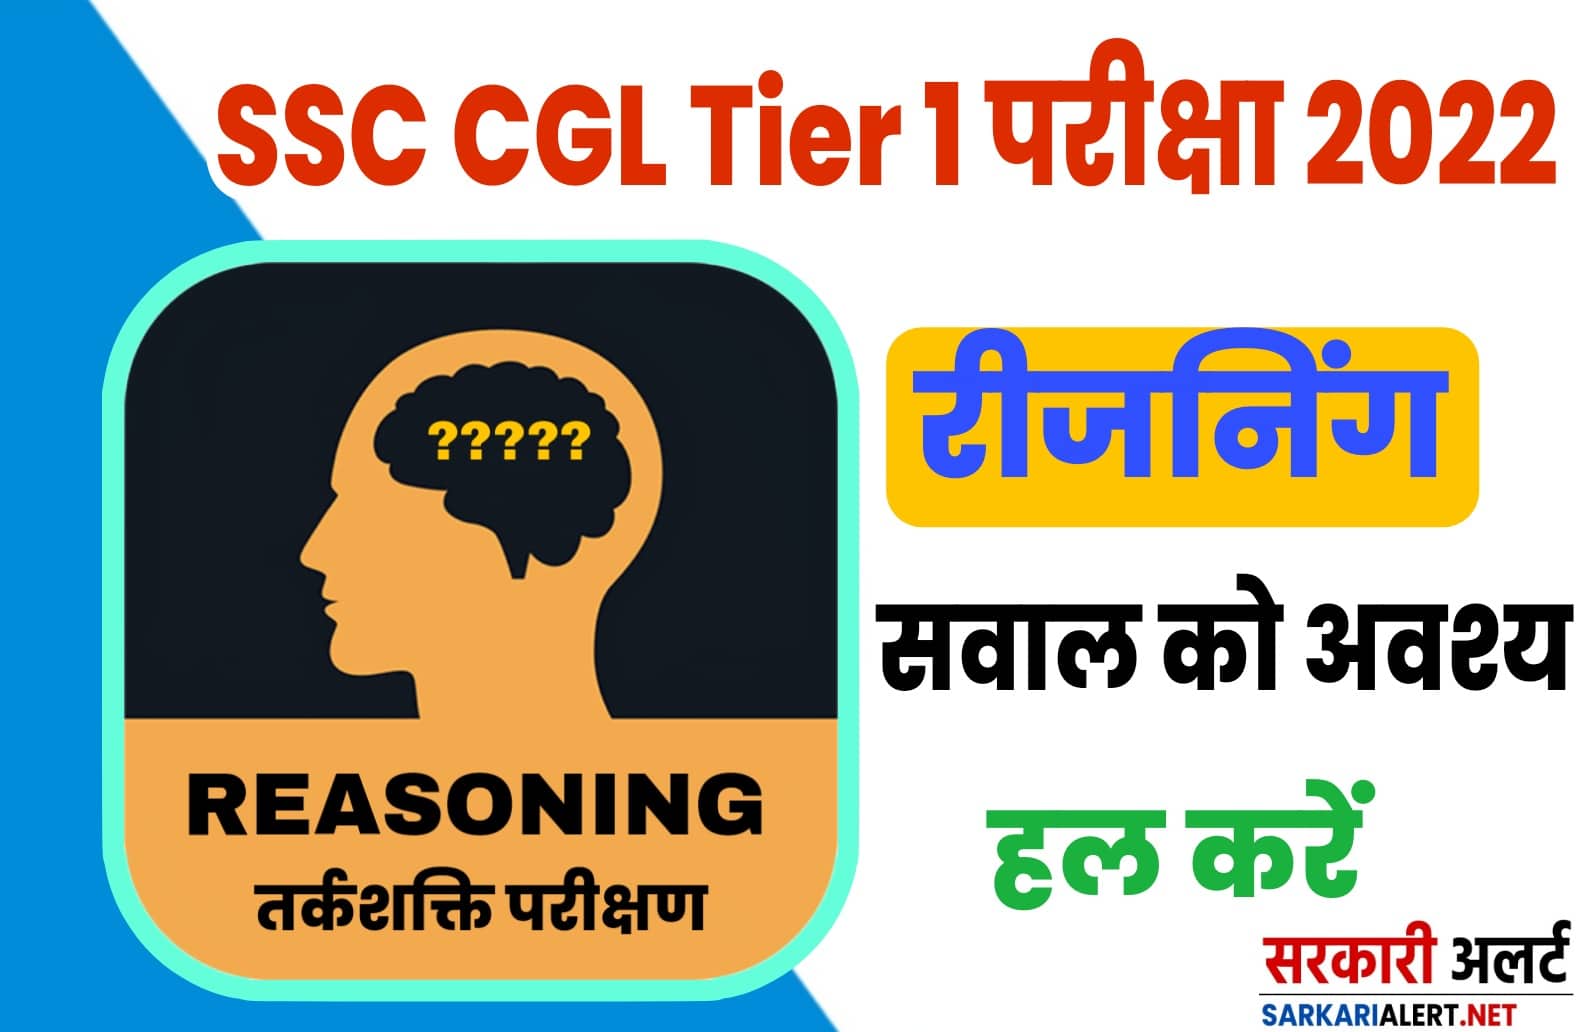 SSC CGL Tier 1  Reasoning | परीक्षा से पहले एक बार जरूर अपनी दक्षता जाँच करें इन प्रश्नों को हल करके